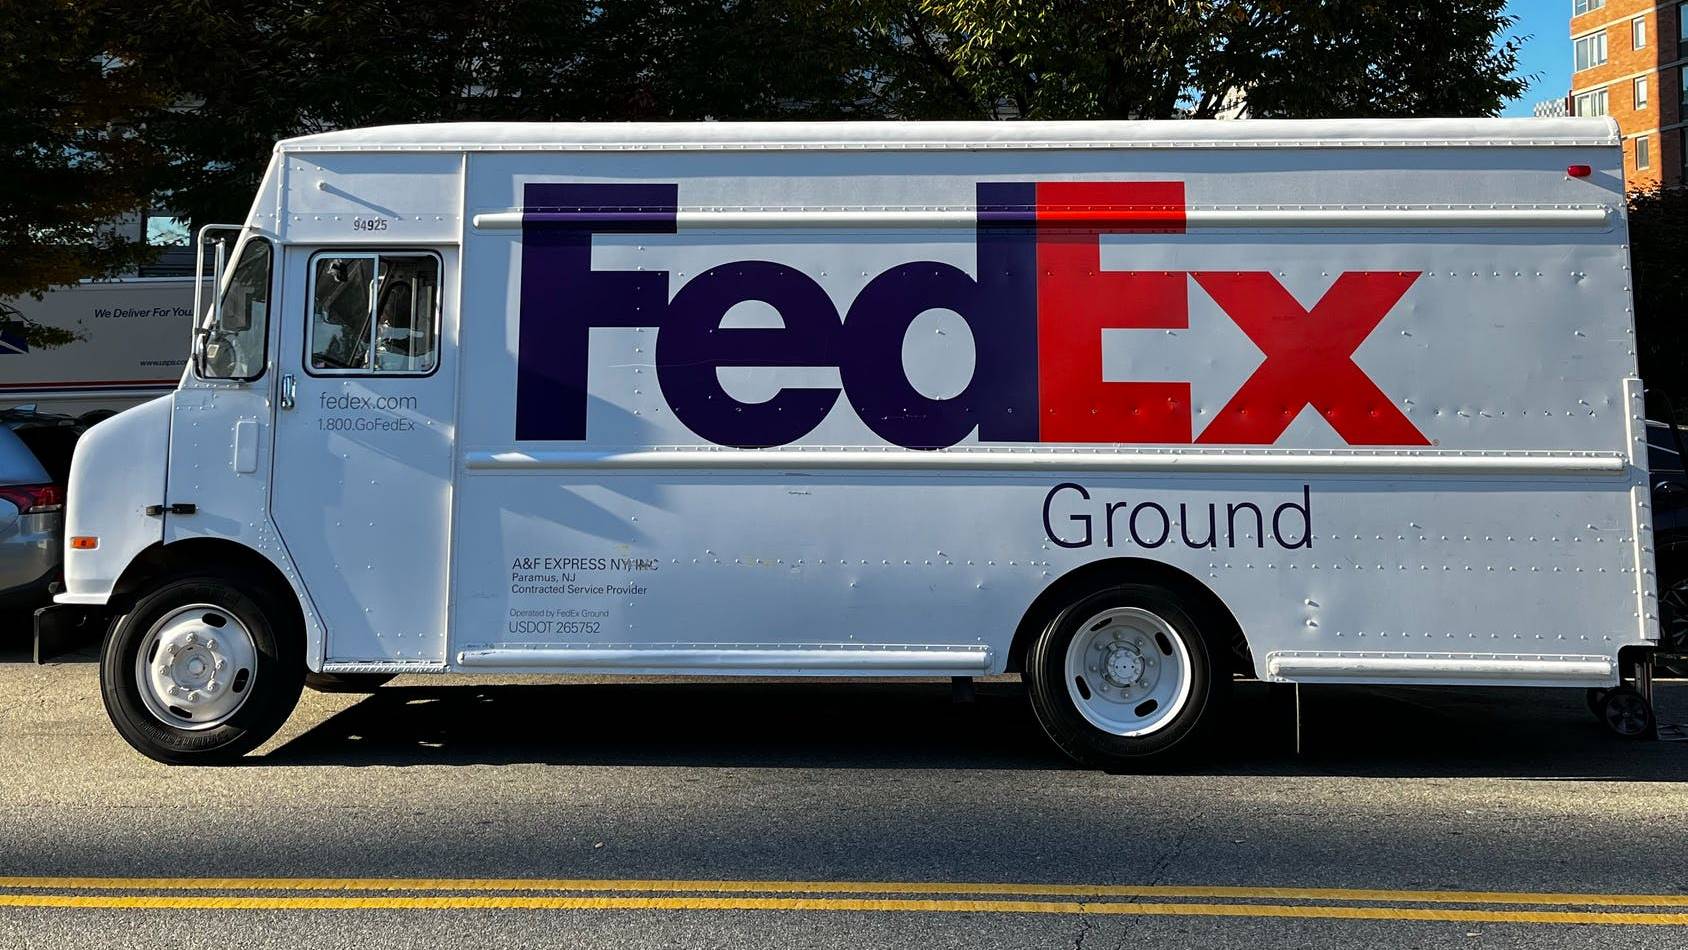 Este es el plan mundial de Fedex para entregar paquetes con 200,000 vehículos eléctricos